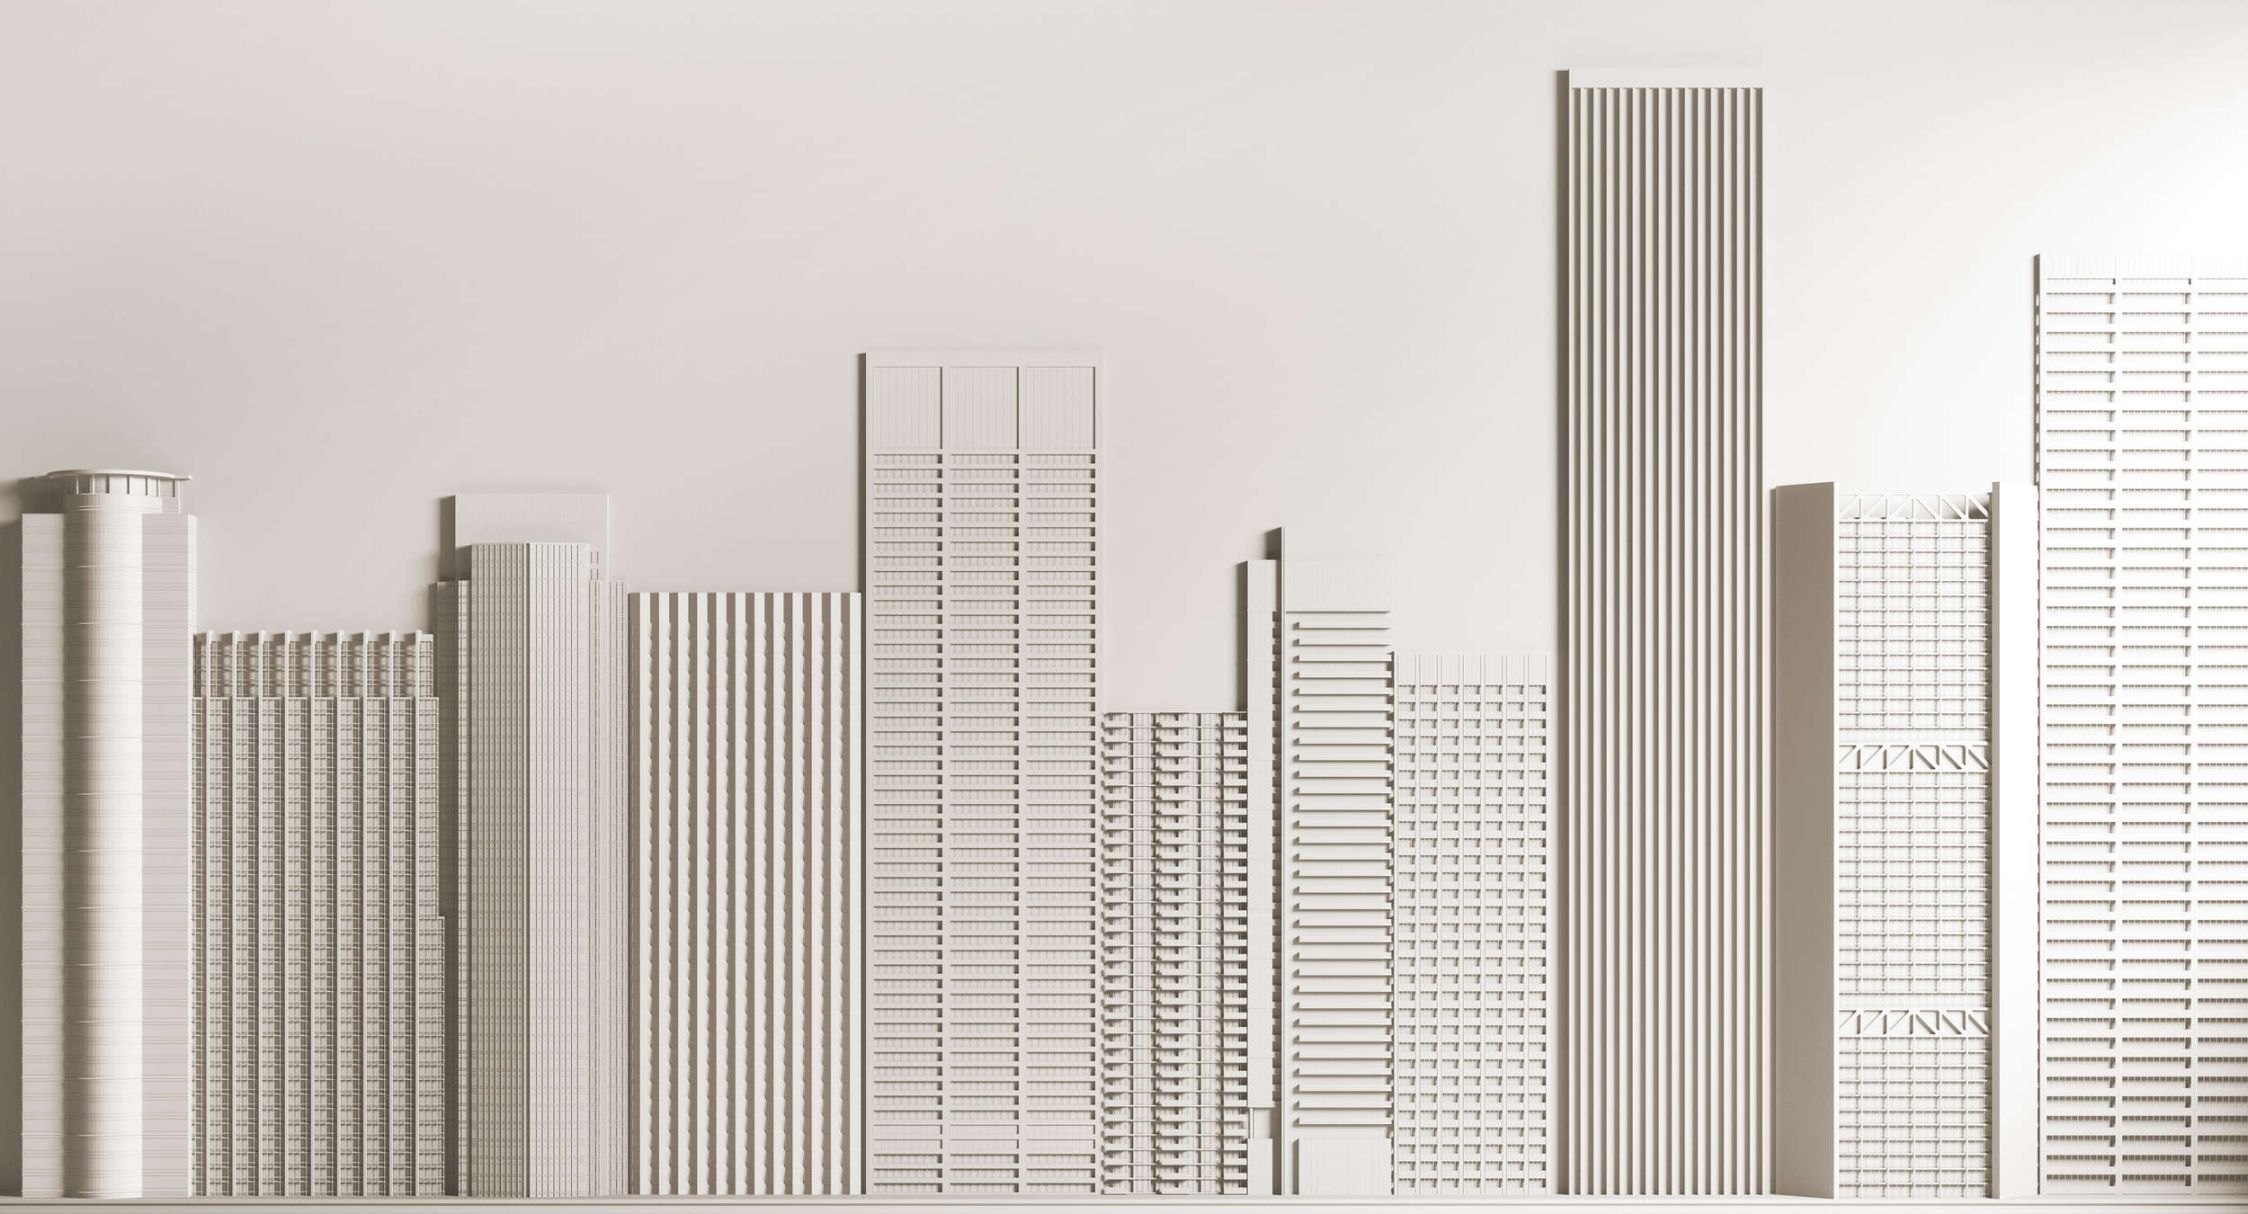             Fotomurali »new skyline« - architettura con grattacieli - tessuto non tessuto opaco e liscio
        